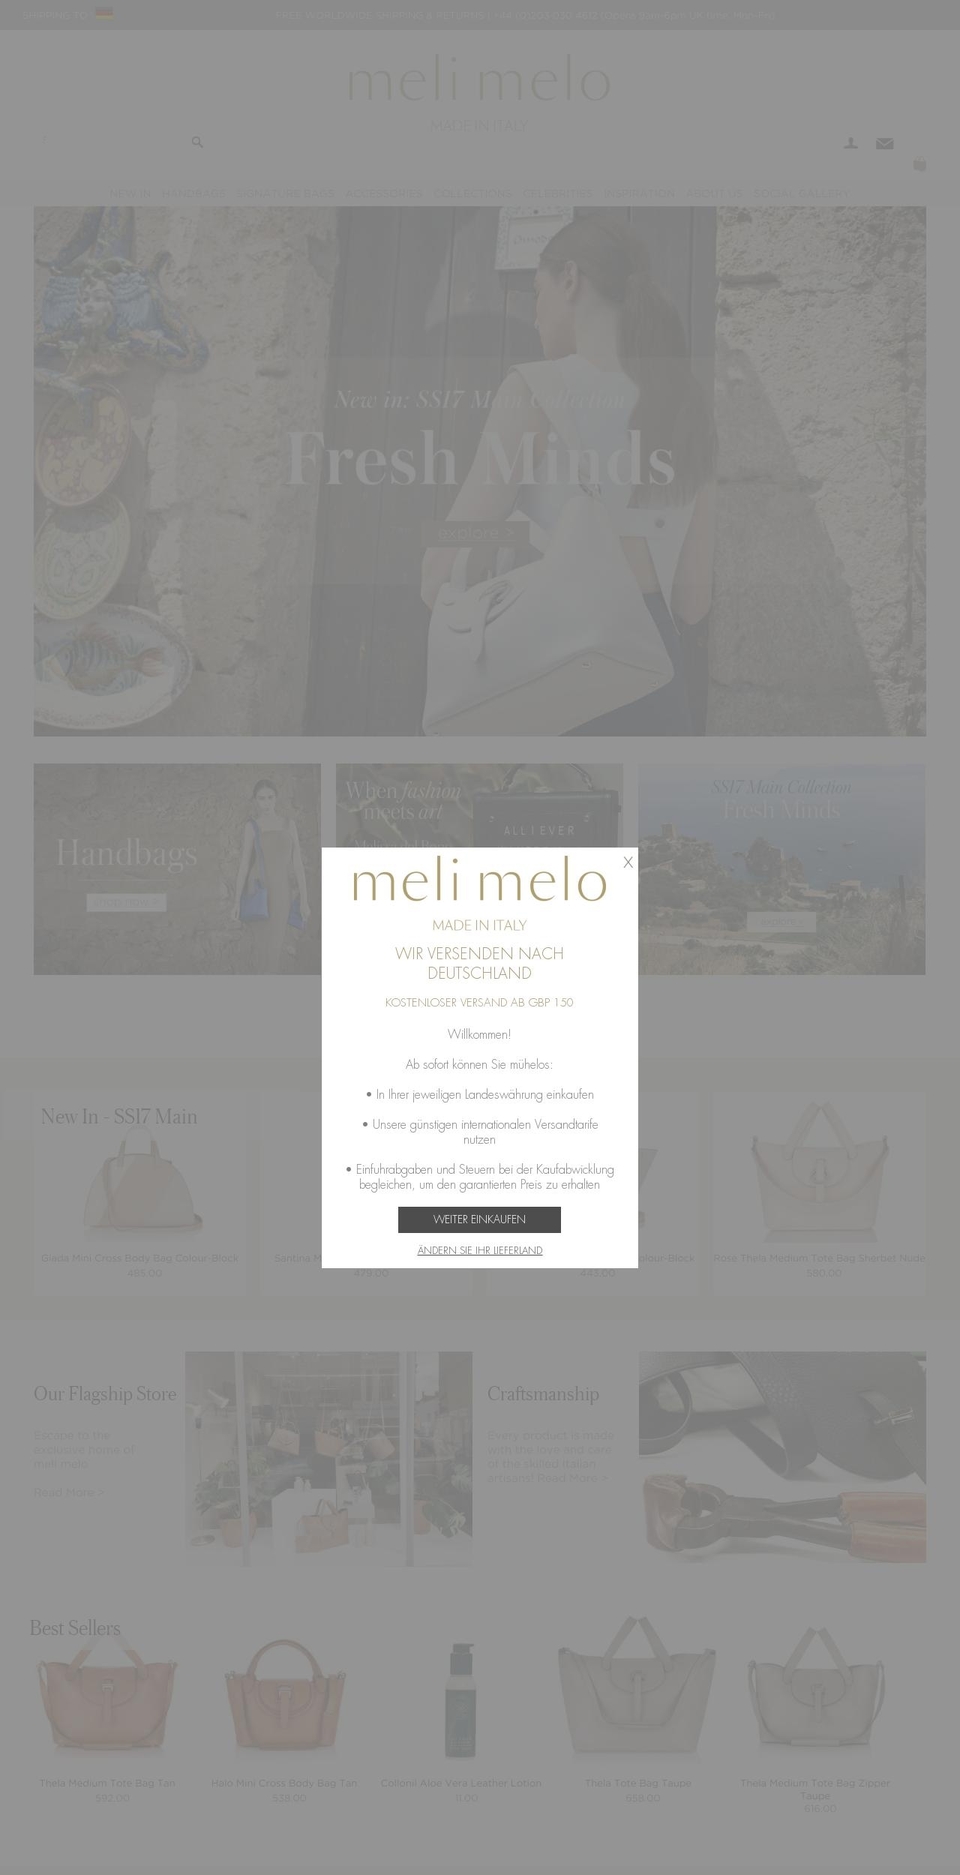 melimelo.co.uk shopify website screenshot